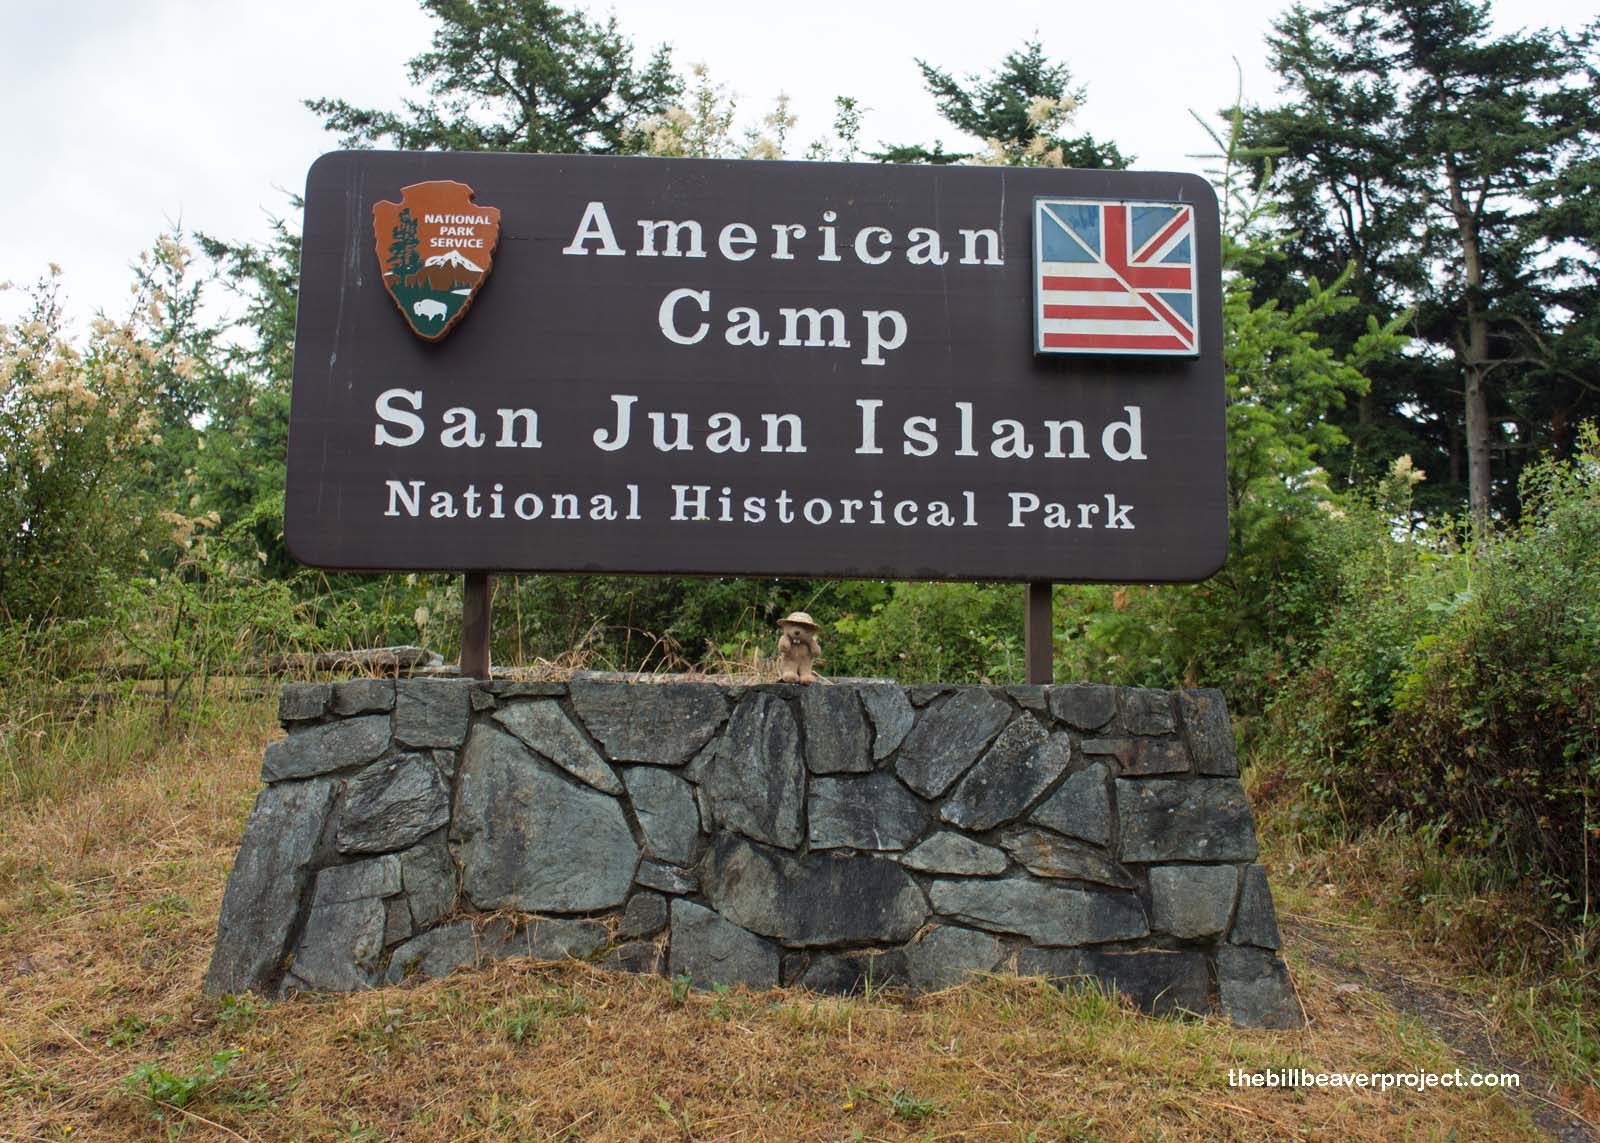 San Juan Island National Historical Park